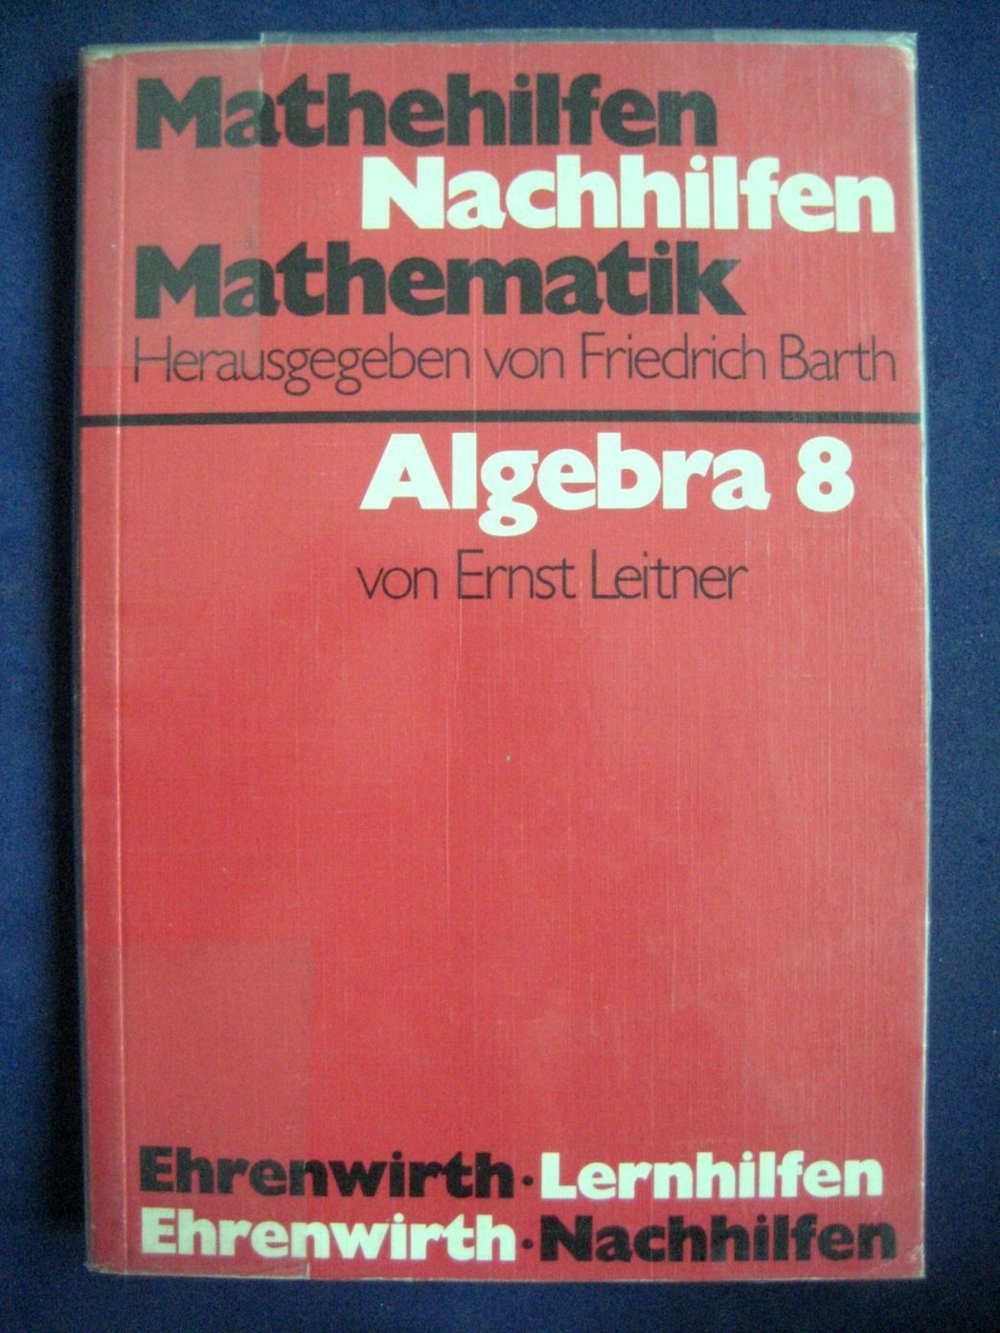 Schulbuch Algebra 8 - Mathematik Nachhilfen von Ernst Leitner, 151 Seiten, Ehrenwirth Lernhilfen